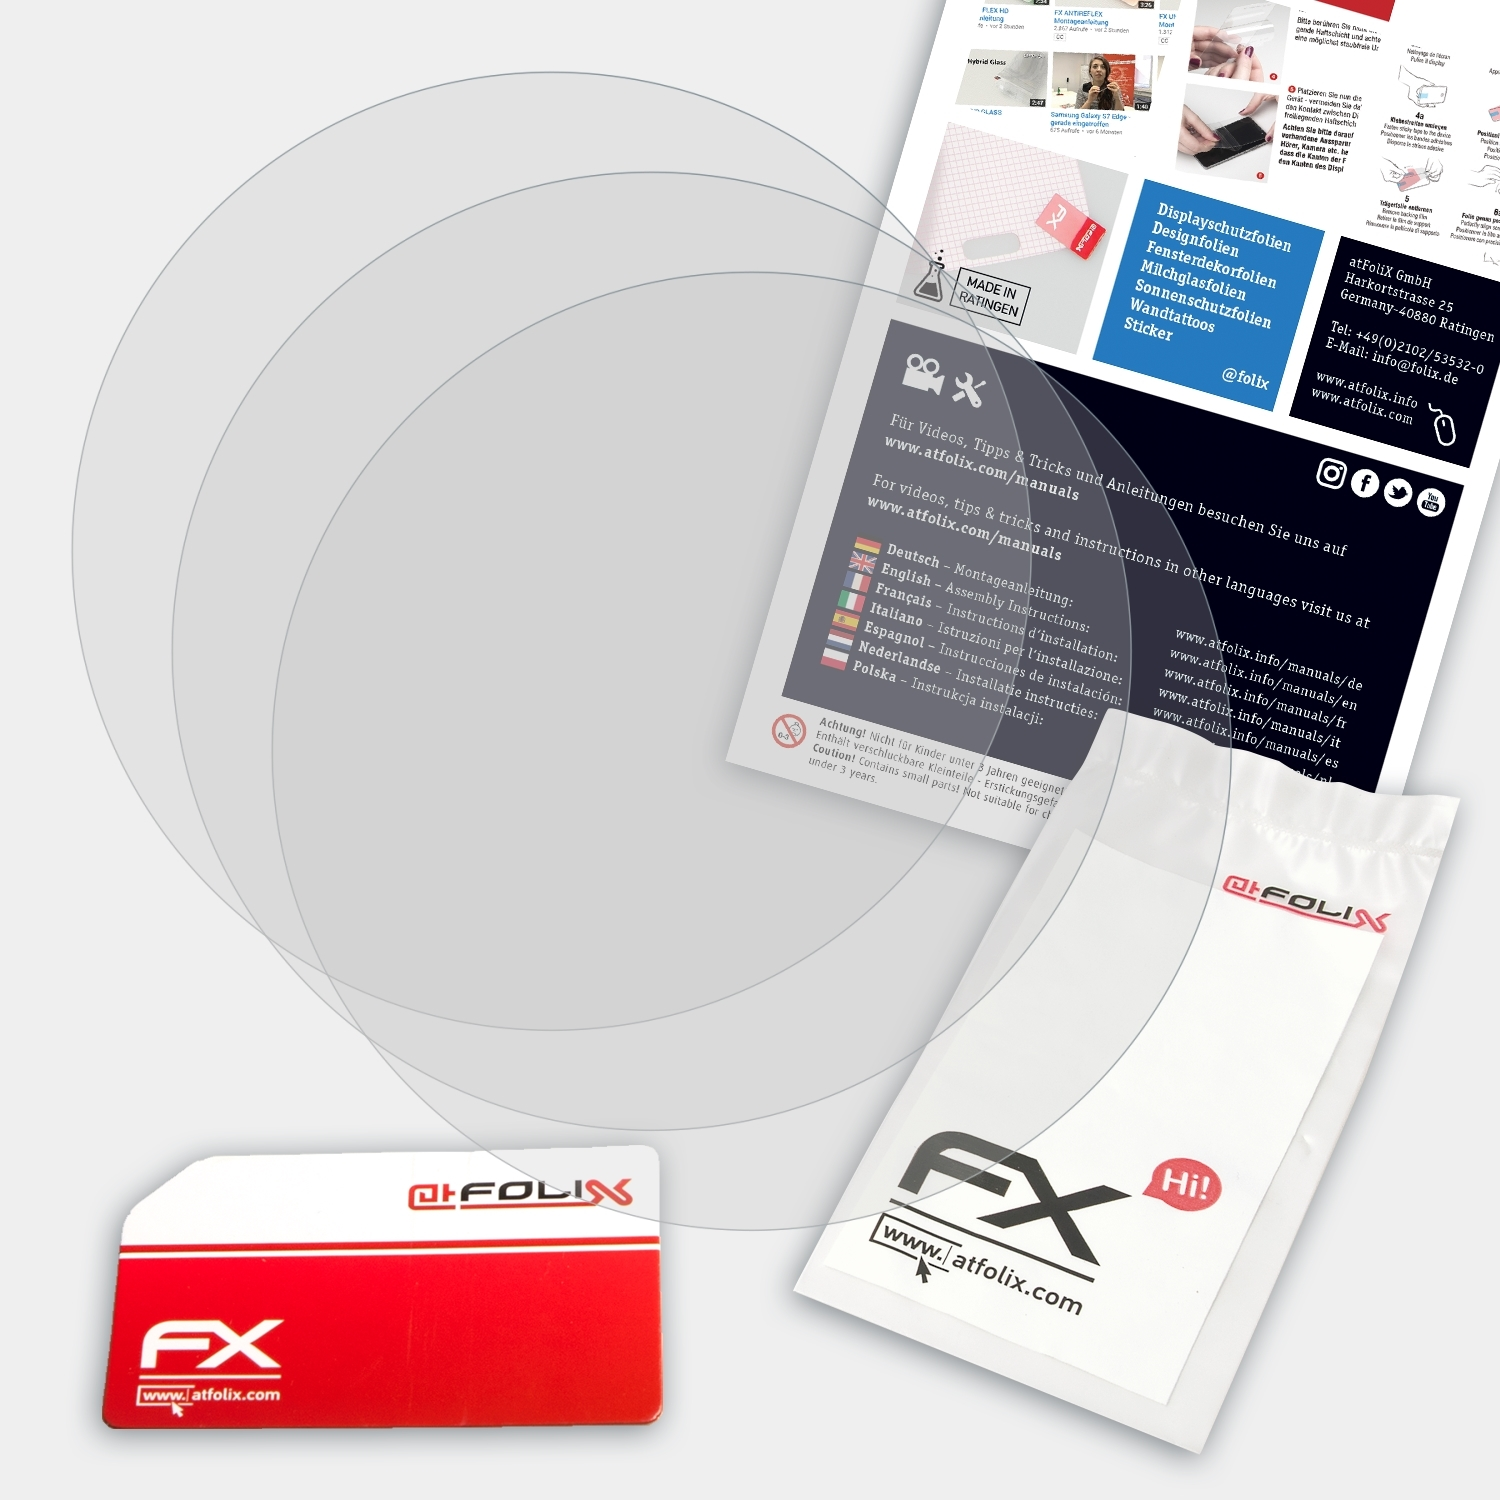 Core Suunto 3x Ultimate) FX-Antireflex ATFOLIX Displayschutz(für